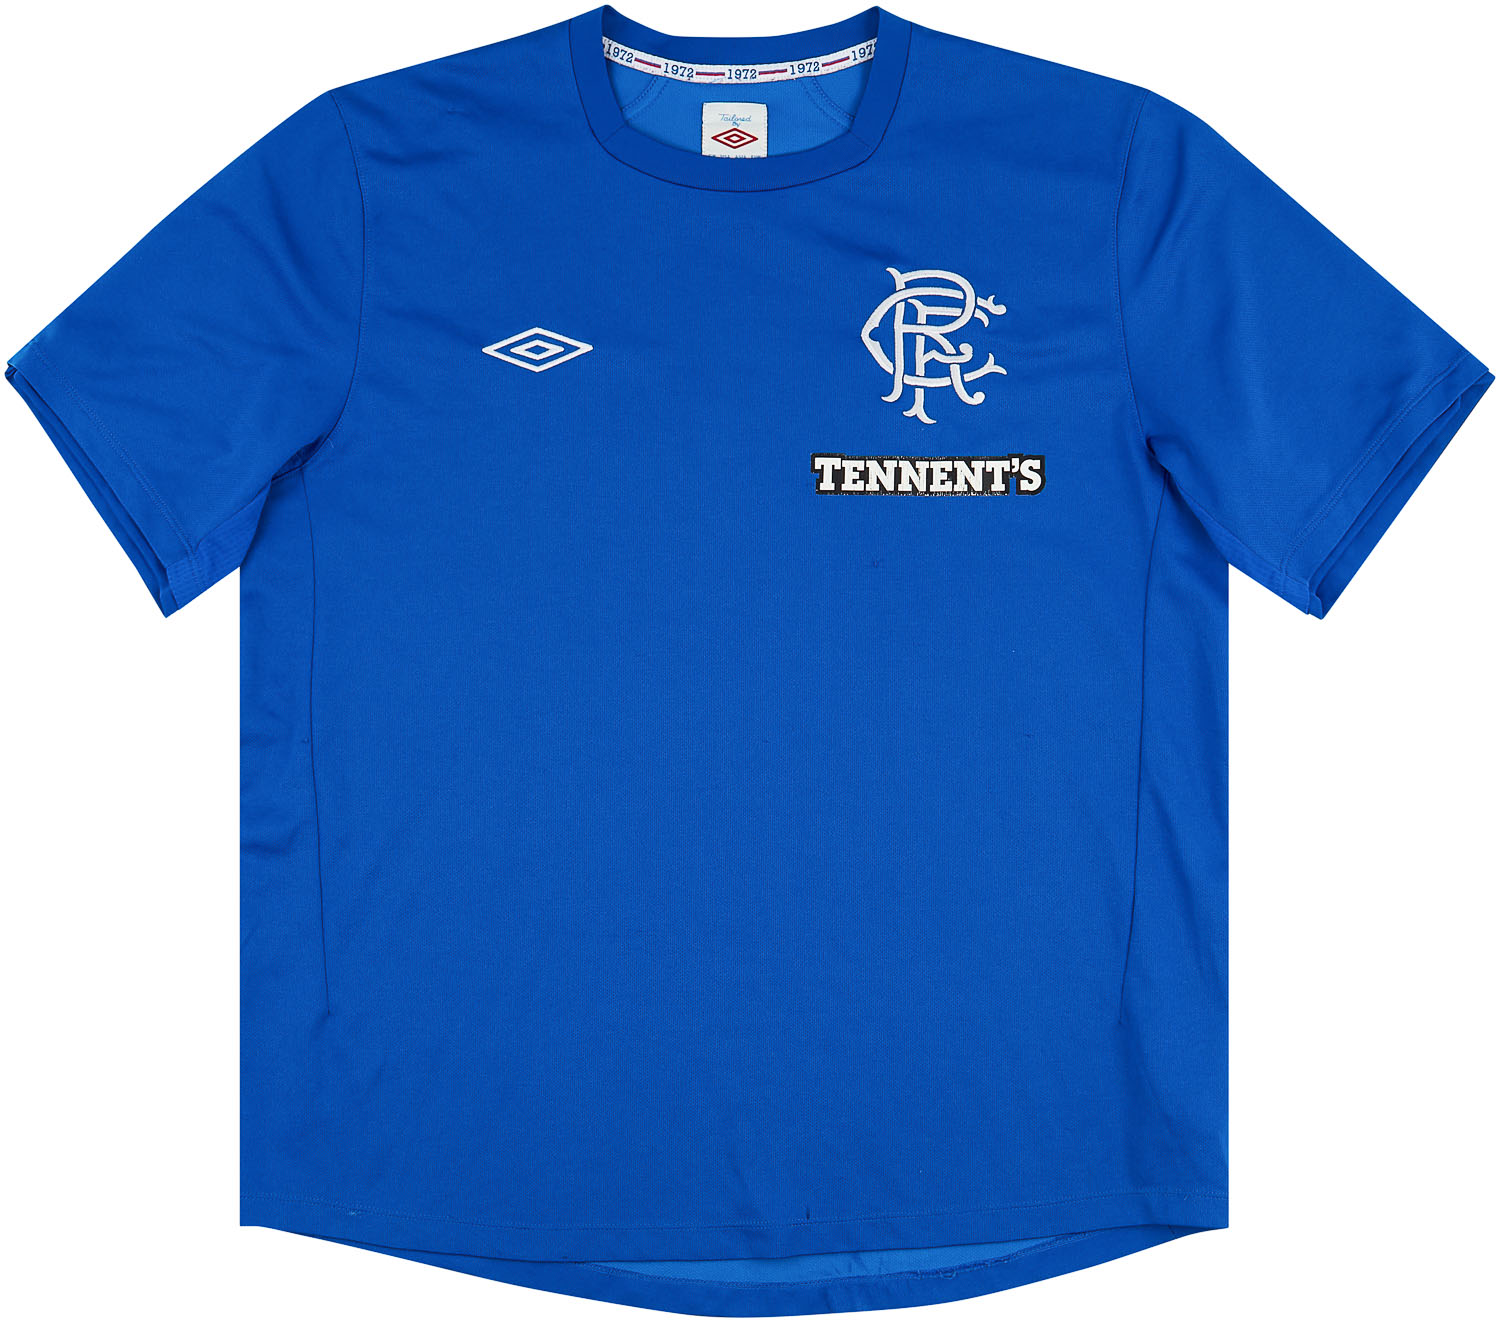 2012-13 Rangers Home Shirt - 6/10 - ()